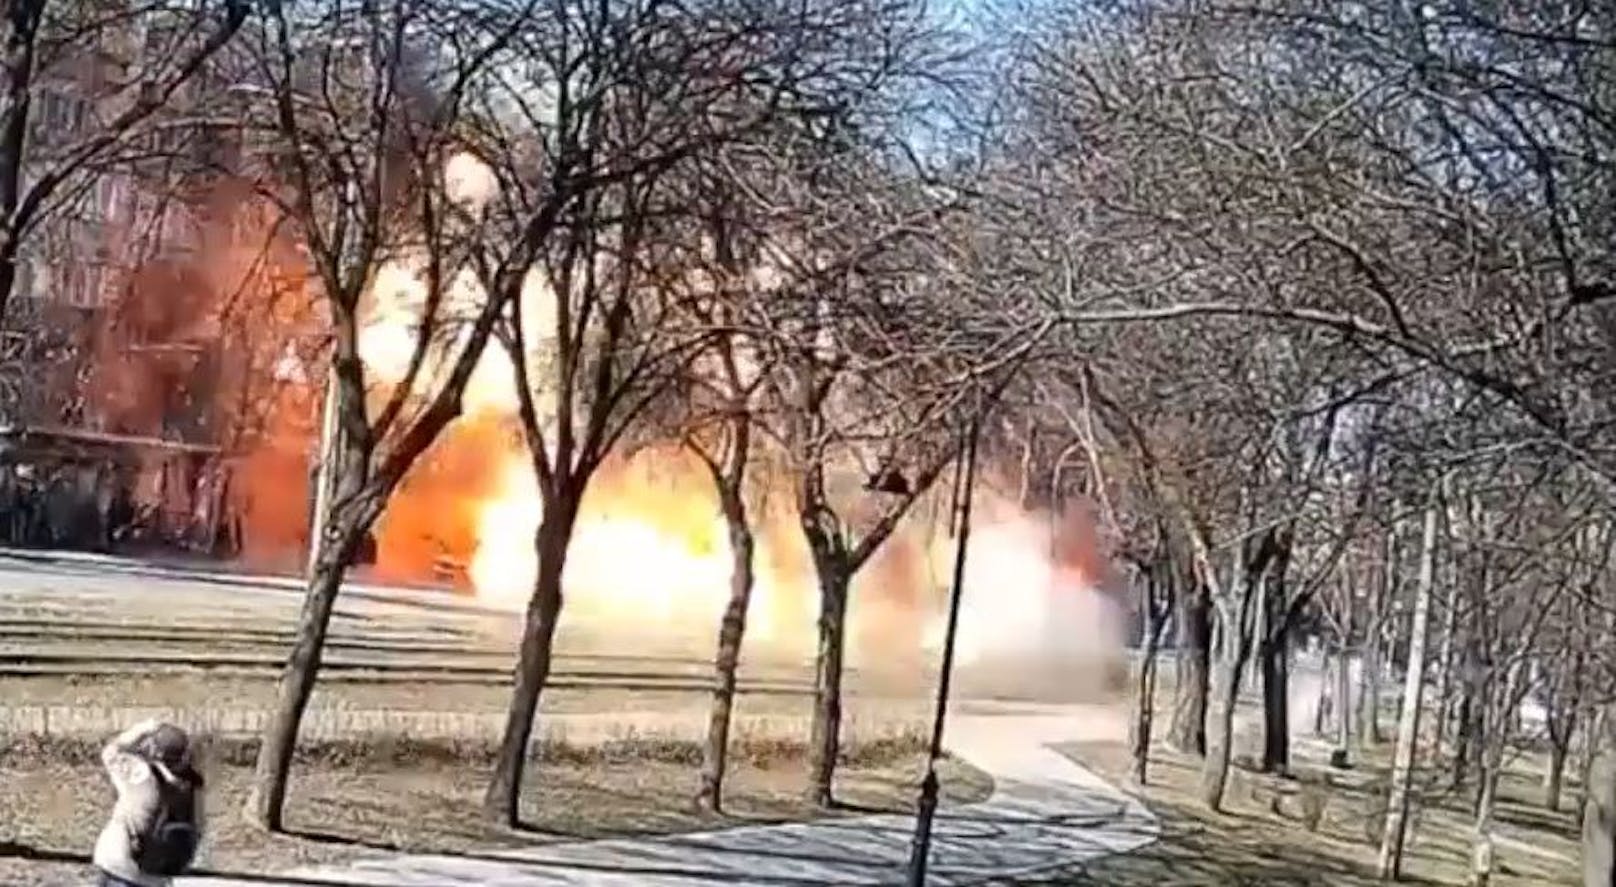 Bei der Explosion kam ukrainischen Angaben zufolge eine Person ums Leben.